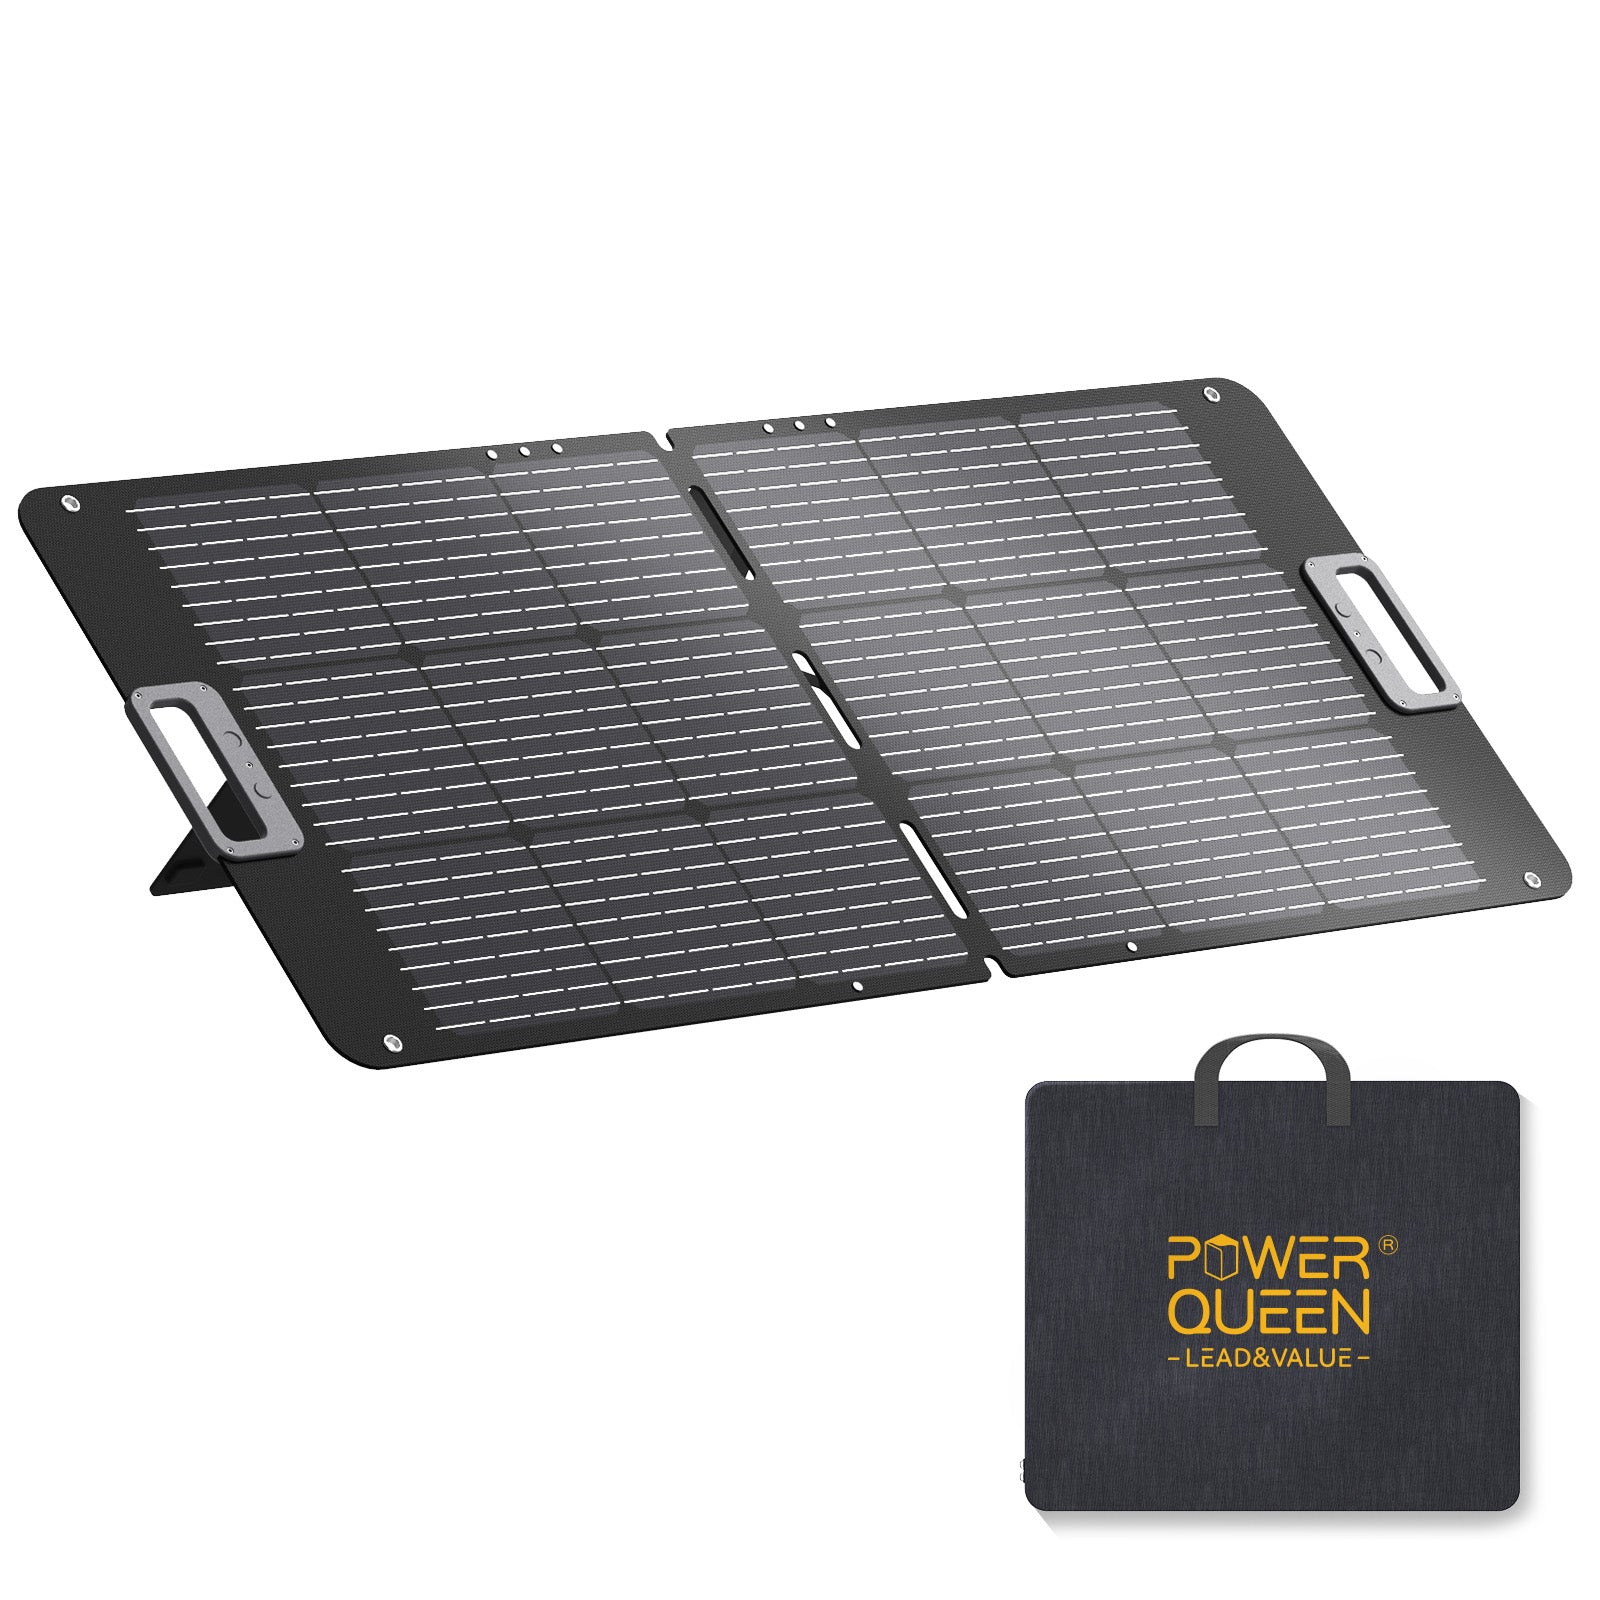 Power Queen 100W draagbaar zonnepaneel voor P300 draagbare krachtcentrale